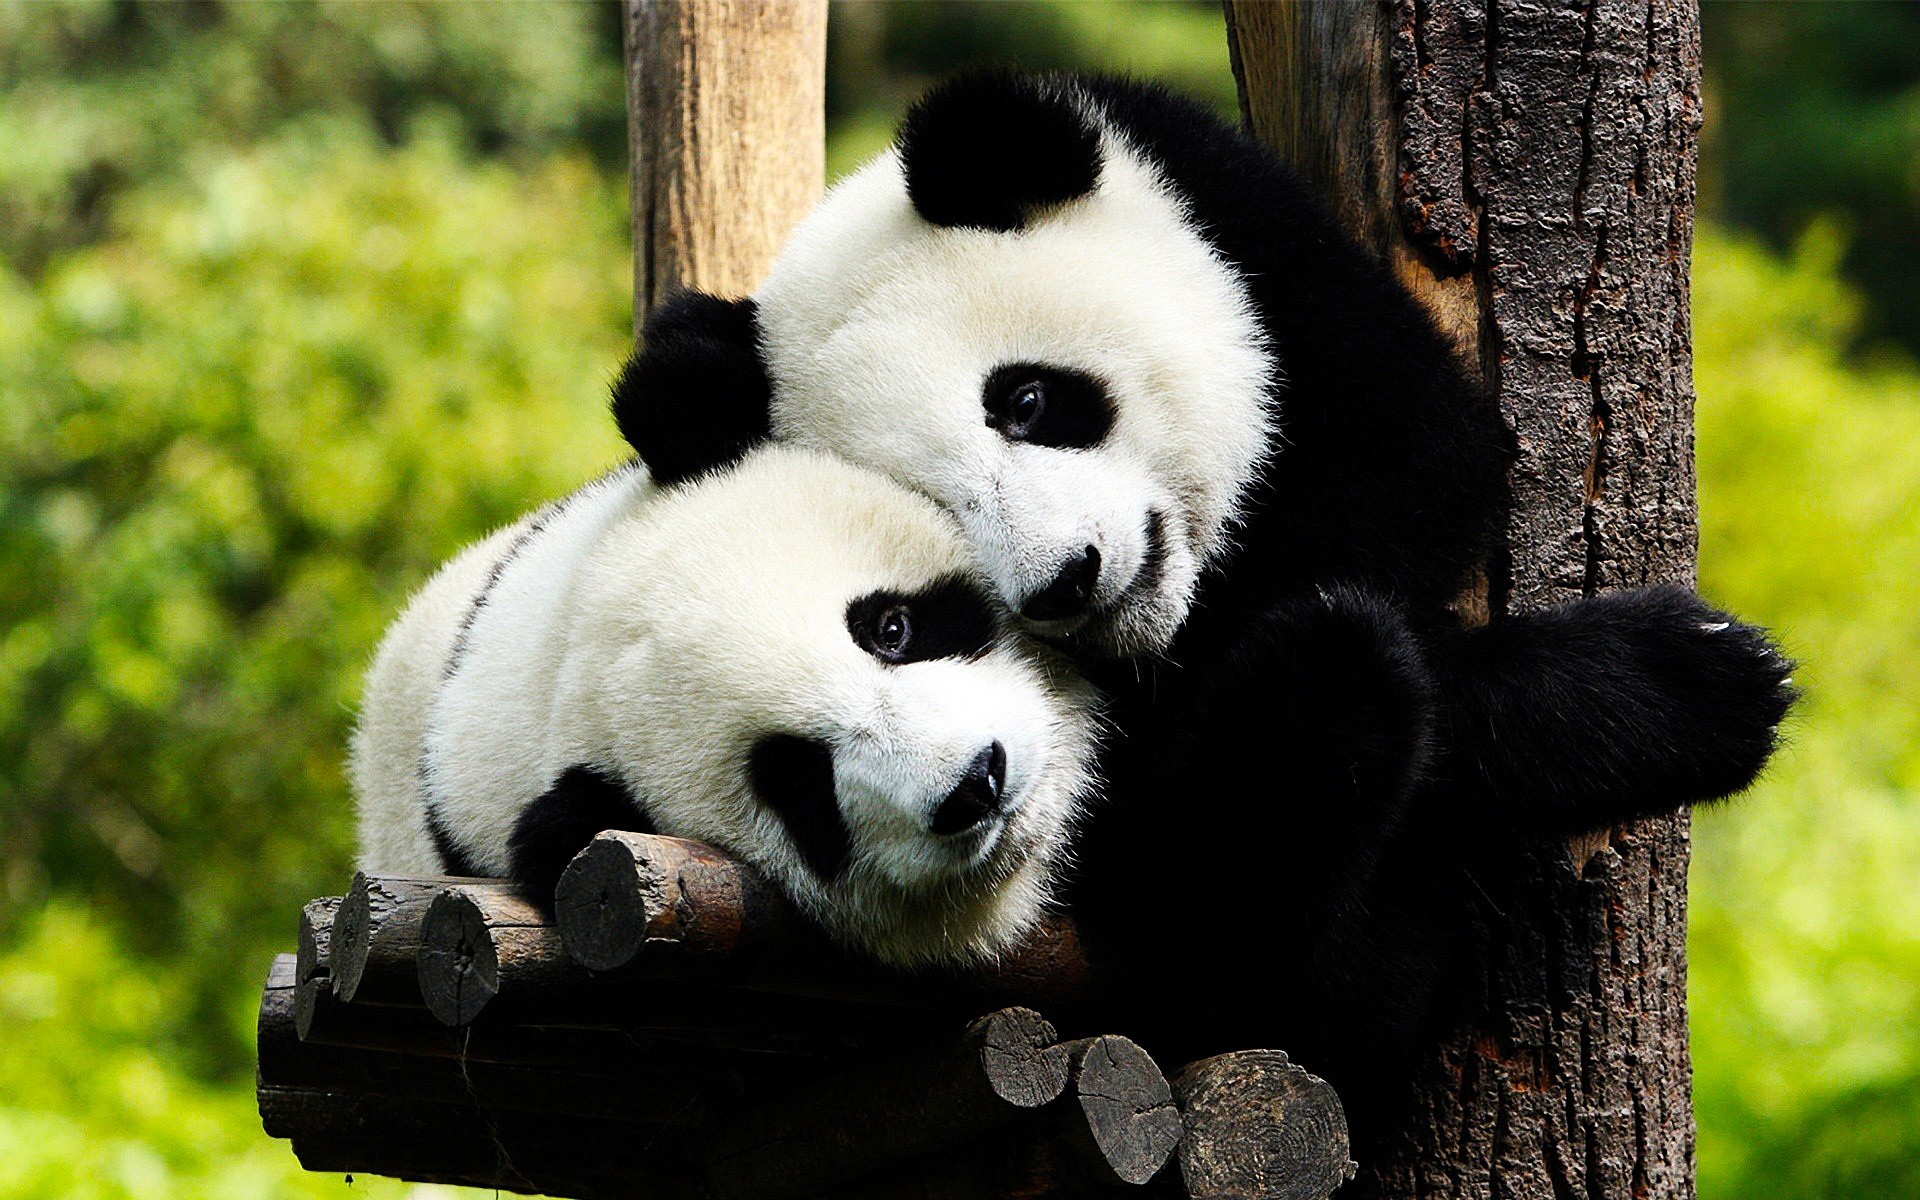  Retiran a los pandas de las especies en peligro de extinción, aunque China no está de acuerdo